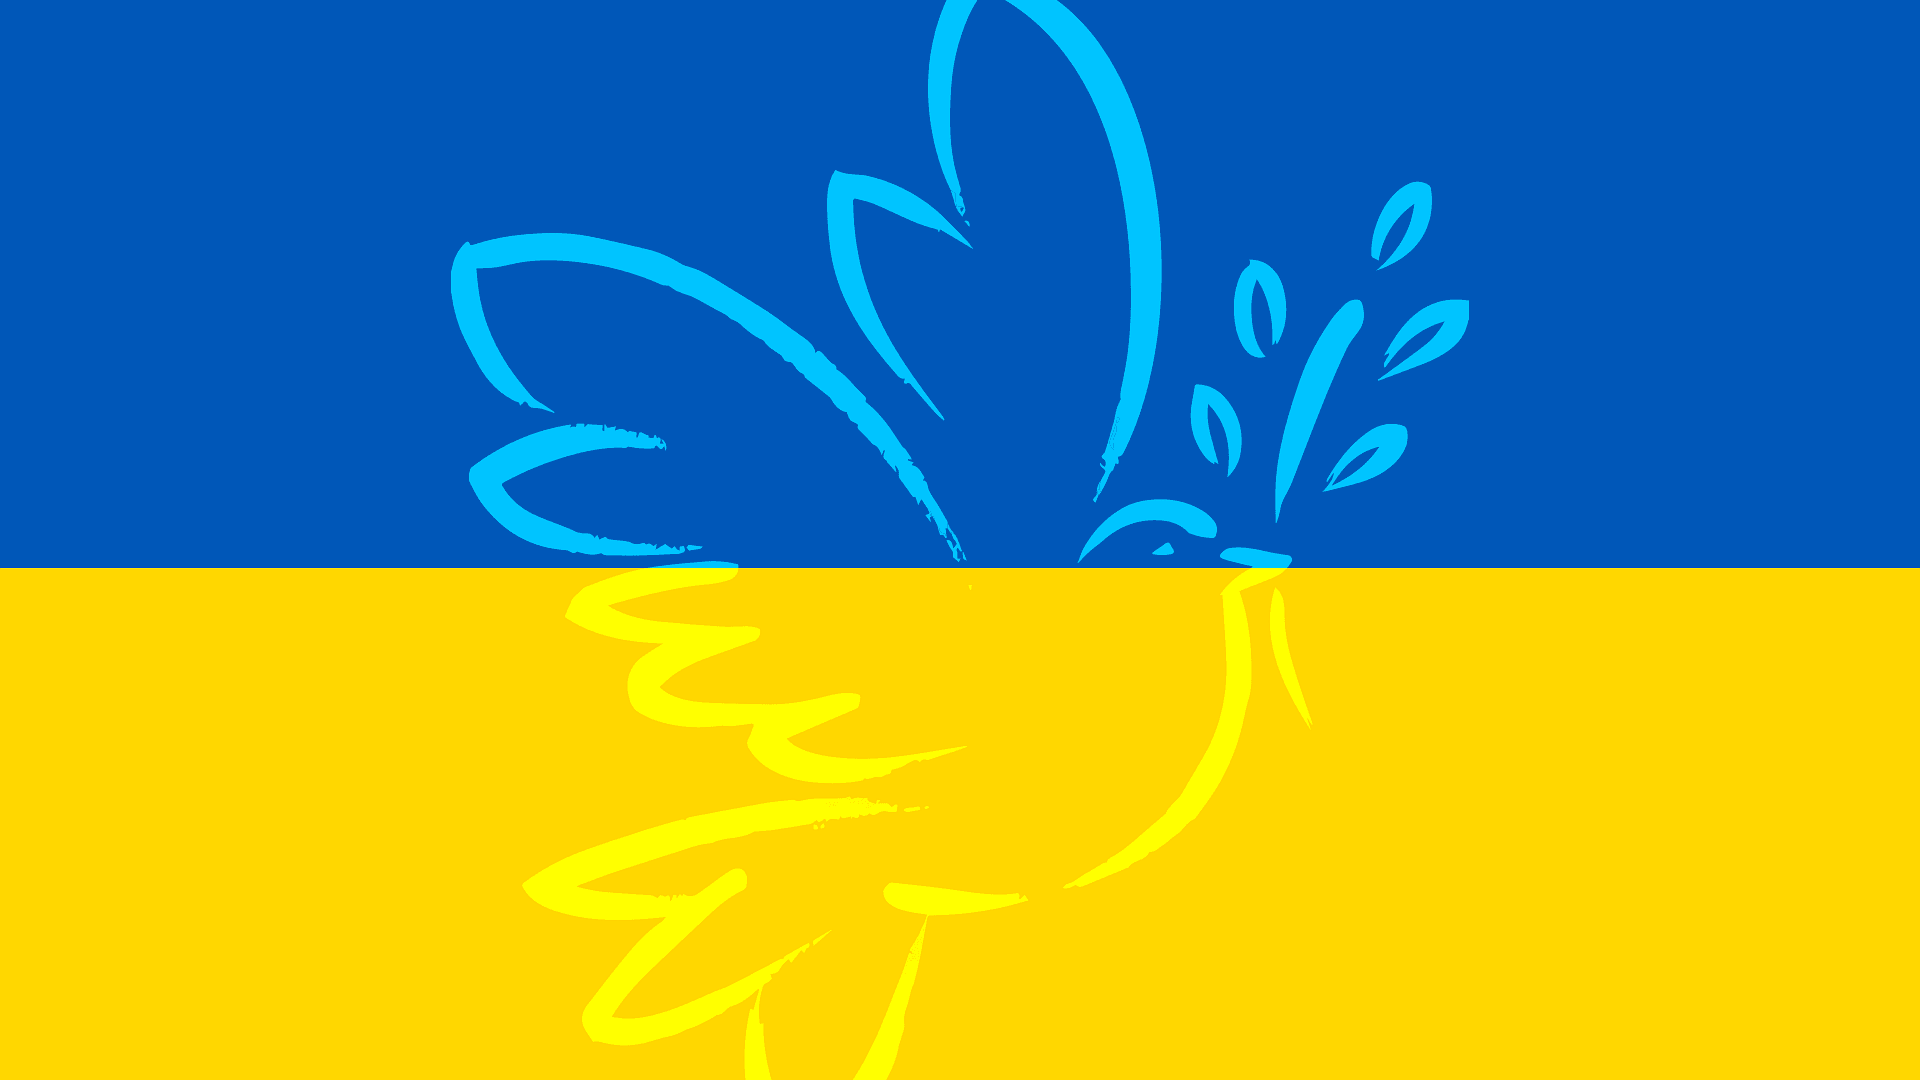 Im Hintergrund die Farben Blau und Gelb der Ukraineflagge, darauf eine Friedenstaube